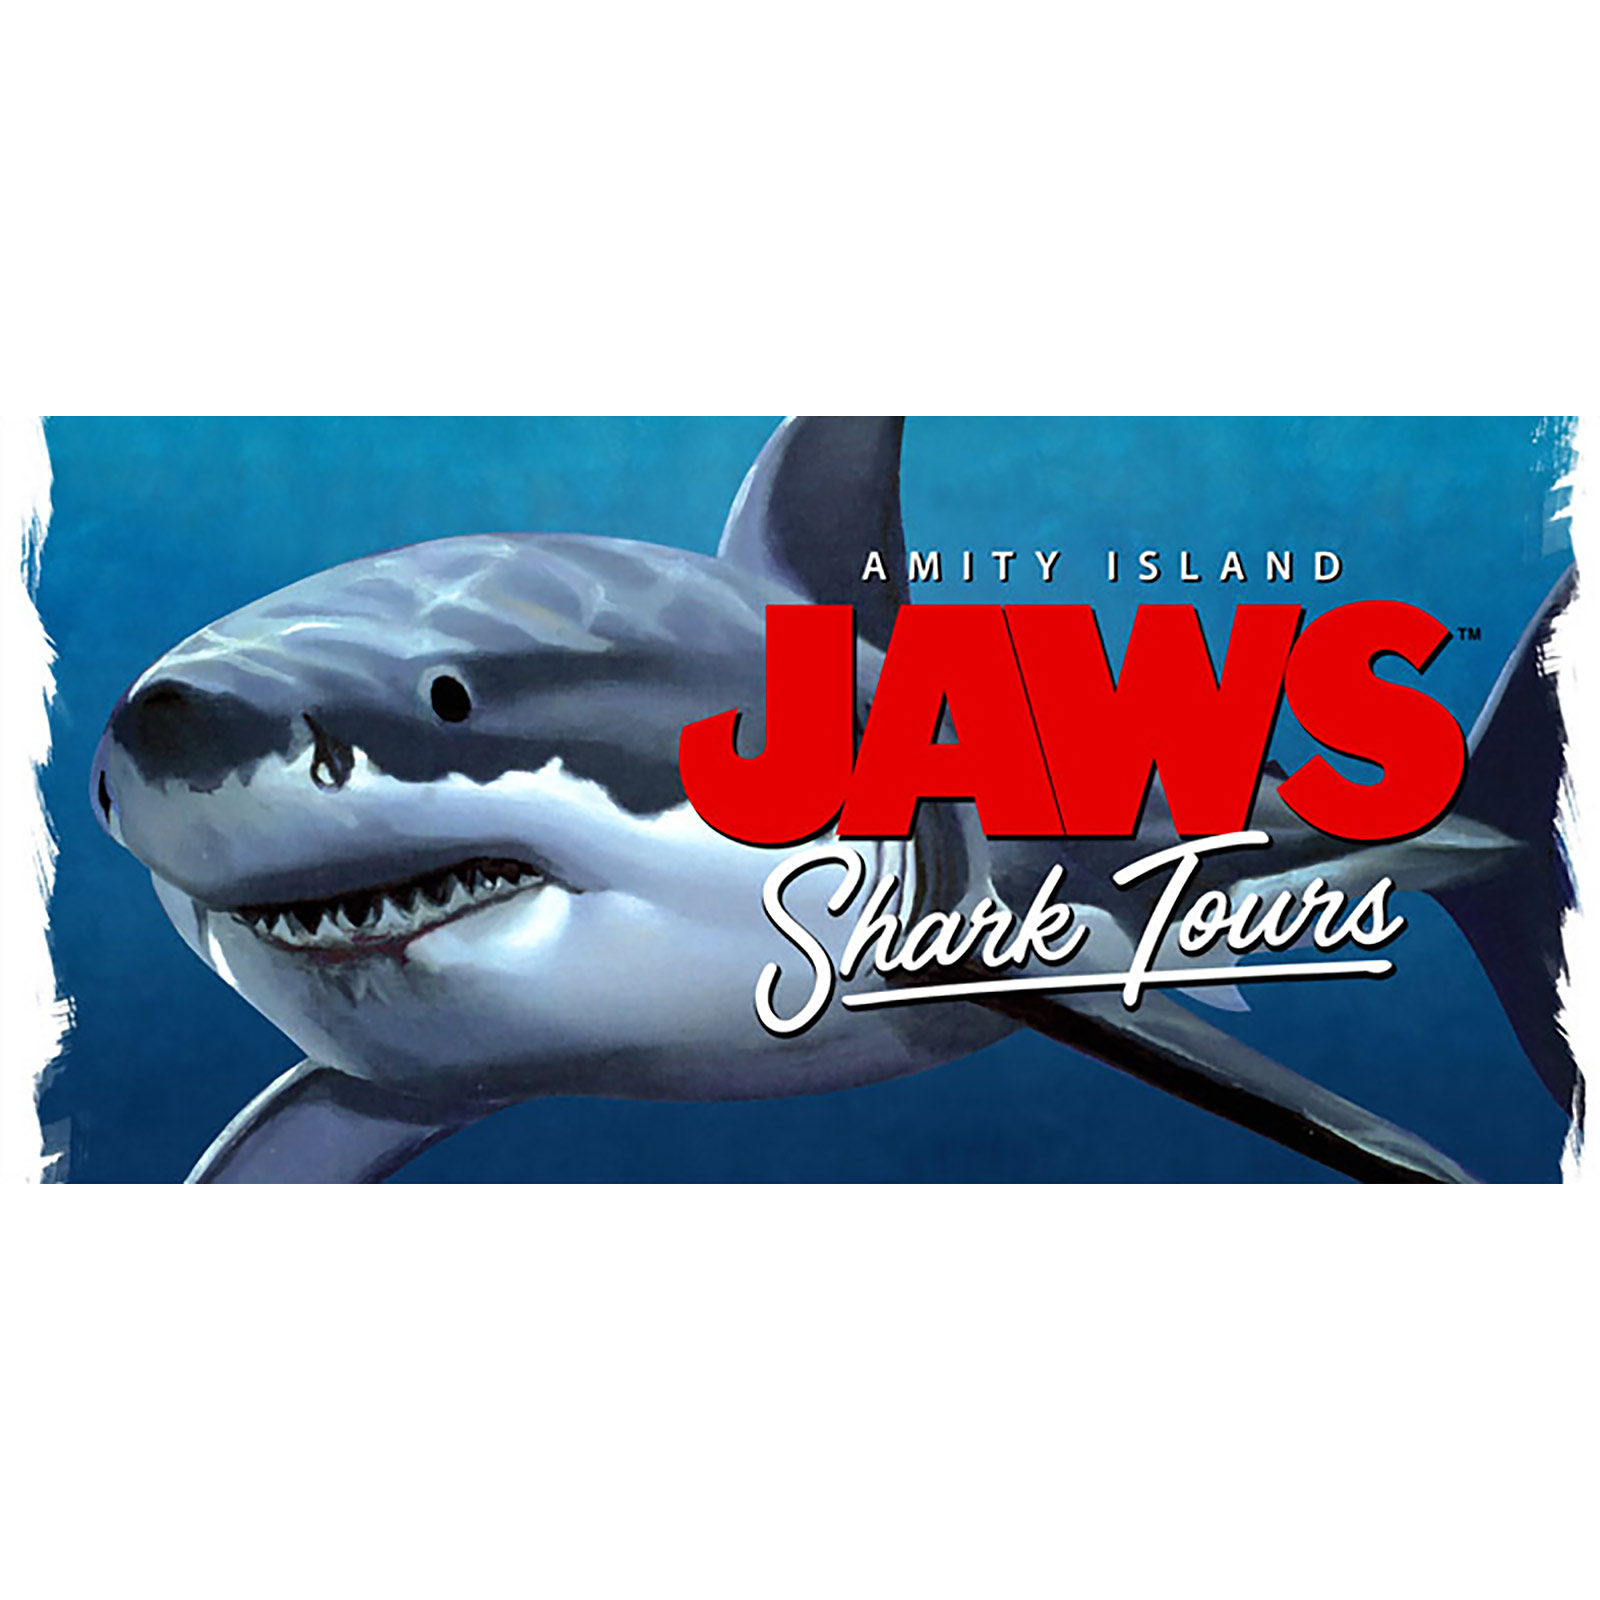 Der weiße Hai - Jaws Shark Tours Tasse